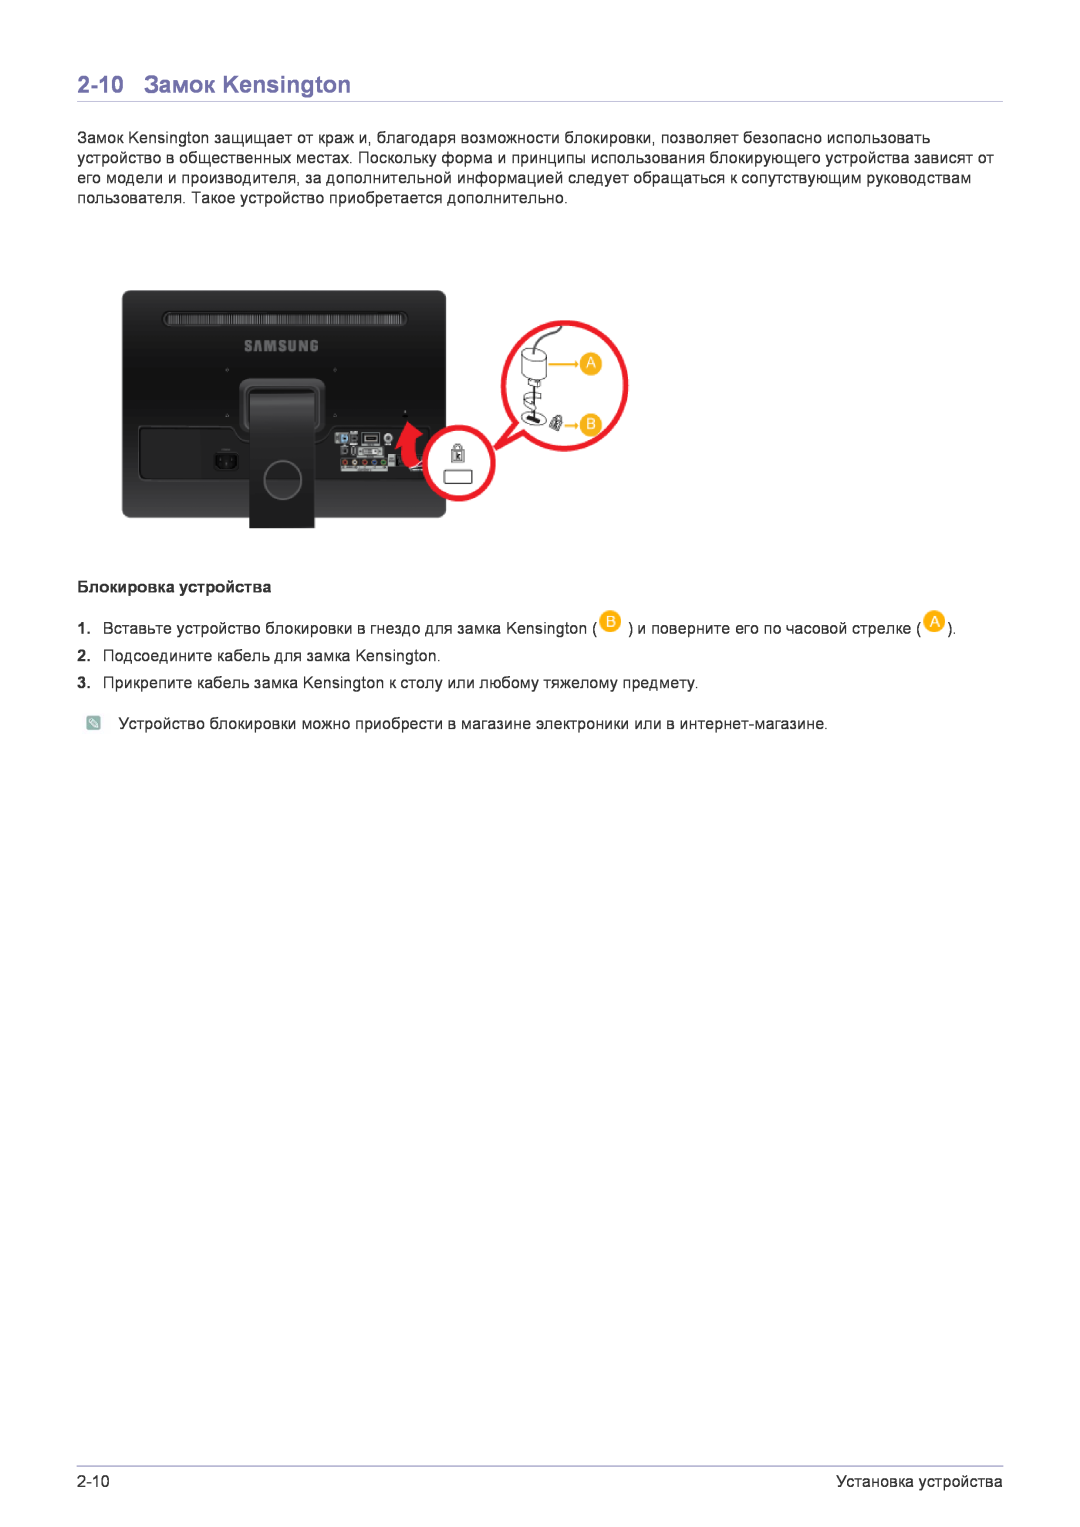 Samsung LS22FMDGF/EN manual 2-10 Замок Kensington, Блокировка устройства 